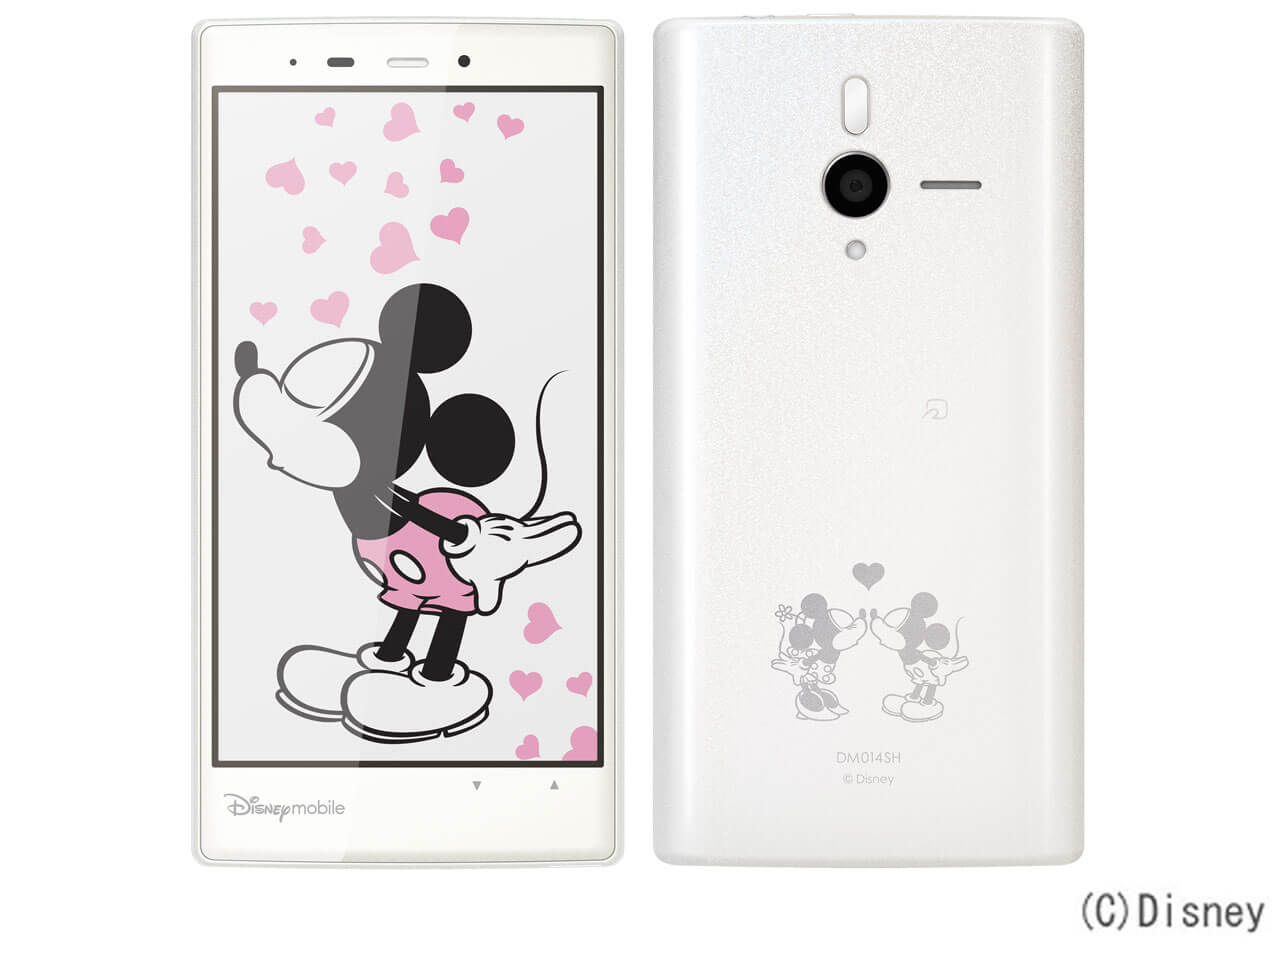 Disney Mobile SHARP Disney Mobile on SoftBank DM014SH